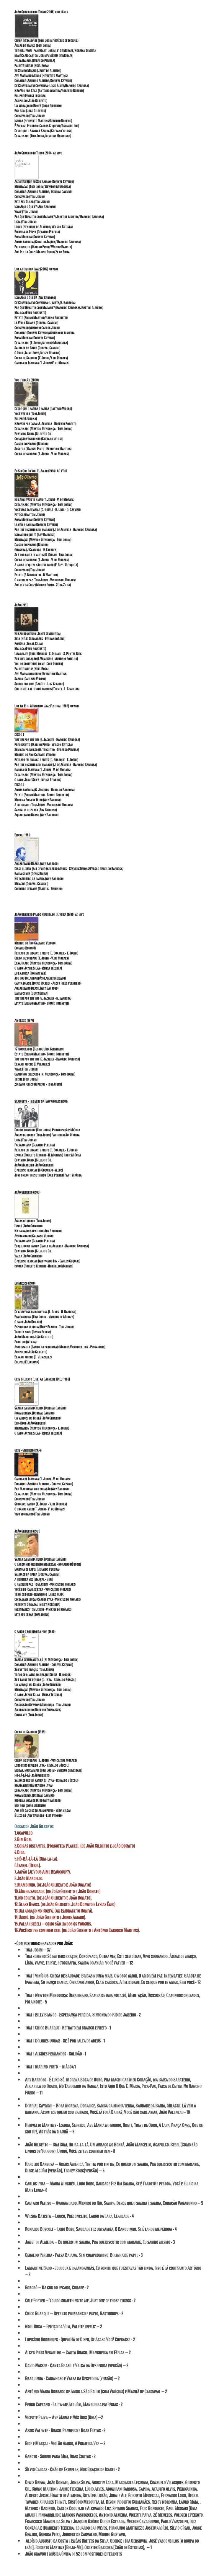 João Gilberto for Tokyo (2006) coletânea
￼
Chega de Saudade (Tom Jobim/Vinícius de Morais) Águas de Março (Tom Jobim) The Girl from Ipanema (T. Jobim, V. de Moraes/Norman Gimbel) Ela é Carioca (Tom Jobim/Vinícius de Moraes) Falsa Baiana (Geraldo Pereira) Palpite Infeliz (Noel Rosa) Eu Sambo Mesmo (Janet de Almeida) Ave Maria do Morro (Herivelto Martins) Doralice (Antônio Almeida/Dorival Caymmi) De Conversa em Conversa (Lúcio Alves/Haroldo Barbosa) Não Vou pra Casa (Antônio Almeida/Roberto Roberti) Eclipse (Ernest Lecuona) Acapulco (João Gilberto) Um Abraço no Bonfá (João Gilberto) Bim Bom (João Gilberto) Corcovado (Tom Jobim) Isaura (Herivelto Martins/Roberto Roberti) É Preciso Perdoar (Carlos Coqueijo/Acivaldo Luz) Desde que o Samba é Samba (Caetano Veloso) Desafinado (Tom Jobim/Newton Mendonça)
 
João Gilberto in Tokyo (2004) ao vivo  créditos
￼
Acontece Que Eu Sou Baiano (Dorival Caymmi) Meditacao (Tom Jobim/ Newton Mendonca)  Doralice (Antonio Almeida/ Dorival Caymmi)  Corcovado (Tom Jobim)  Este Seu Olhar (Tom Jobim)  Isto Aqui o Que é? (Ary Barroso)  Wave (Tom Jobim)  Pra Que Discutir com Madame? (Janet de Almeida/ Haroldo Barbosa)  Ligia (Tom Jobim)  Louco (Henrique de Almeida/ Wilson Batista)  Bolinha de Papel (Geraldo Pereira)  Rosa Morena (Dorival Caymmi)  Adeus America (Geraldo Jaques/ Haroldo Barbosa)  Preconceito (Marino Pinto/ Wilson Batista) Aos Pes da Cruz (Marino Pinto/ Ze da Zilda)

Live at Umbria Jazz (2002) ao vivo
￼
Isto Aqui o Que É? (Ary Barroso) De Conversa em Conversa (L. Alves/H. Barbosa) Pra Que Discutir com Madame? (Haroldo Barbosa/Janet de Almeida) Malaga (Fred Bongusto) Estate (Bruno Martino/Bruno Brighetti) Lá Vem a Baiana (Dorival Caymmi) Corcovado (Antonio Carlos Jobim) Doralice (Dorival Caymmi/Antônio de Almeida) Rosa Morena (Dorival Caymmi) Desafinado (T. Jobim/Newton Mendonça) Saudade da Bahia (Dorival Caymmi) O Pato (Jaime Silva/Neuza Teixeira) Chega de Saudade (T. Jobim/V. de Moraes) Garota de Ipanema (T. Jobim/V. de Moraes)
 
Voz e Violão (2000)  créditos
￼
Desde que o samba é samba (Caetano Veloso)  Você vai ver (Tom Jobim)  Eclipse (Lecuona)  Não vou pra casa (A. Almeida - Roberto Roberti)  Desafinado (Newton Mendonça - Tom Jobim)  Eu vim da Bahia (Gilberto Gil)  Coração vagabundo (Caetano Veloso)  Da cor do pecado (Bororó)  Segredo (Marino Pinto - Herivelto Martins)  Chega de saudade (T. Jobim - V. de Moraes)
 
Eu Sei Que Eu Vou Te Amar (1994)  AO VIVO
￼
Eu sei que vou te amar (T. Jobim - V. de Moraes) 
Desafinado (Newton Mendonça - Tom Jobim) 
Você não sabe amar (C. Guinle - H. Lima - D. Caymmi) 
Fotografia (Tom Jobim) 
Rosa Morena (Dorival Caymmi) 
Lá vem a baiana (Dorival Caymmi) 
Pra que discutir com madame (J. de Almeida - Haroldo Barbosa) 
Isto aqui o que é? (Ary Barroso) 
Meditação (Newton Mendonça - Tom Jobim) 
Da cor do pecado (Bororó) 
Guacyra (J.Camargo - H.Tavares) 
Se é por falta de adeus (D. Duran - Tom Jobim) 
Chega de saudade (T. Jobim - V. de Moraes) 
A valsa de quem não tem amor (E. Ruy - Mesquita) 
Corcovado (Tom Jobim) 
Estate (B.Bringhetti - B.Martino) 
O amor em paz (Tom Jobim - Vinicius de Moraes) 
Aos pés da Cruz (Marino Pinto - Zé da Zilda)



João (1991)   créditos
￼
Eu sambo mesmo (Janet de Almeida)  Siga (Hélio Guimarães - Fernando Lobo)  Rosinha (Jonas Silva)  Málaga (Fred Bongusto)  Una mujer (Paul Misraki - C. Olivari - S. Pontal Rios)  Eu e meu coração (I. Vilarinho - Antônio Botelho)  You do something to me (Cole Porter)  Palpite infeliz (Noel Rosa)  Ave Maria no morro (Herivelto Martins)  Sampa (Caetano Veloso)  Sorriu pra mim (Garôto - Luiz Cláudio)  Que reste-t-il de nos amours (Trenet - L. Chauliag)
 
Live At 19th Montreux Jazz Festival (1986) ao vivo créditos
￼
DISCO 1
Tim tim por tim tim (G. Jacques - Haroldo Barbosa) 
Preconceito (Marino Pinto - Wilson Batista) 
Sem compromisso (N. Trigueiro - Geraldo Pereira) 
Menino do Rio (Caetano Veloso) 
Retrato em branco e preto (C. Buarque - T. Jobim) 
Pra que discutir com madame (J. de Almeida - Haroldo Barbosa) 
Garota de Ipanema (T. Jobim - V. de Moraes) 
Desafinado (Newton Mendonça - Tom Jobim) 
O pato (Jaime Silva - Neusa Teixeira)
DISCO 2 Adeus América (G. Jacques - Haroldo Barbosa)  Estate (Bruno Martino - Bruno Brighetti)  Morena Boca de Ouro (Ary Barroso)  A felicidade (Tom Jobim - Vinicius de Moraes)  Sandália de prata (Ary Barroso)  Aquarela do Brasil (Ary Barroso)
 


Brasil (1981)
￼
Aquarela do Brasil (Ary Barroso) Disse alguém (All of me) (geraldo Marks - Seymor Simons/Versão Haroldo Barbosa) Bahia com H (Denis Brian) No tabuleiro da baiana (Ary Barroso) Milagre (Dorival Caymmi) Cordeiro de Nanã (Mateus - Dadinho)
 

João Gilberto Prado Pereira de Oliveira (1980) ao vivo
￼
Menino do Rio (Caetano Veloso)  Curare (Bororó)  Retrato em branco e preto (C. Buarque - T. Jobim)  Chega de saudade (T. Jobim - V. de Moraes)  Desafinado (Newton Mendonça - Tom Jobim)  O pato (Jayme Silva - Neusa Teixeira)  Eu e a brisa (Johnny Alf)  Jou Jou Balangandãs (Lamartine Babo)  Canta Brasil (David Nasser - Alcyr Pires Vermelho)  Aquarela do Brasil (Ary Barroso)  Bahia com H (Denis Brean)  Tim tim por tim tim (G. Jacques - H. Barbosa)  Estate (Bruno Martino - Bruno Brighetti)
 
Amoroso (1977)
￼
'S Wonderful (George e Ira Gershwin)  Estate (Bruno Martino - Bruno Brighetti)  Tim tim por tim tim (G. Jacques - Haroldo Barbosa)  Besame mucho (C.Velaquez)  Wave (Tom Jobim)  Caminhos cruzados (N. Mendonça - Tom Jobim)  Triste (Tom Jobim)  Zingaro (Chico Buarque - Tom Jobim)
 
Stan Getz - The Best of Two Worlds (1976)
￼
Double rainbow (Tom Jobim) Participação: Miúcha  Águas de março (Tom Jobim) Participação: Miúcha  Ligia (Tom Jobim)  Falsa baiana (Geraldo Pereira)  Retrato em branco e preto (C. Buarque - T.Jobim)  Izaura (Roberto Roberti - H. Martins) Part: Miúcha Eu vim da Bahia (Gilberto Gil)  João Marcello (João Gilberto)  É preciso perdoar (C.Coqueijo - A.Luz)  Just one of those things (Cole Porter) Part: Miúcha
 
João Gilberto (1973)
￼
Águas de março (Tom Jobim) Undiú (João Gilberto) Na baixa do sapateiro (Ary Barroso) Avarandado (Caetano Veloso) Falsa baiana (Geraldo Pereira) Eu quero um samba (Janet de Almeida - Haroldo Barbosa) Eu vim da Bahia (Gilberto Gil) Valsa (João Gilberto) É preciso perdoar (Alcivando Luz - Carlos Coquijo) Isaura (Roberto Roberti - Herivelto Martins)
 
En Mexico (1970)
￼
De conversa em conversa (L. Alves - H. Barbosa)  Ela é carioca (Tom Jobim - Vinicius de Moraes)  O sapo (João Donato) Esperança perdida (Billy Blanco - Tom Jobim)  Trolley song (Irving Berlin)  João Marcelo (João Gilberto)  Farolito (A.Lara)  Astronauta (Samba da pergunta) (Marcos Vasconcellos - Pingarilho)  Acapulco (João Gilberto)  Besame mucho (C. Velazquez)  Eclipse (E.Lecuona)
 
Getz Gilberto (live) At Carnegie Hall (1965)
￼
Samba da minha terra (Dorival Caymmi) Rosa morena (Dorival Caymmi) Um abraço no Bonfá (João Gilberto) Bim-Bom (João Gilberto) Meditation (Newton Mendonça - T. Jobim) O pato (Jayme Silva - Neusa Teixeira)
 
Getz - Gilberto (1964)
￼
Garota de Ipanema (T. Jobim - V. de Moraes) Doralice (Antônio Almeida - Dorival Caymmi) Pra Machucar meu coração (Ary Barroso) Desafinado (Newton Mendonça - Tom Jobim) Corcovado (Tom Jobim) Só danço samba (T. Jobim - V. de Moraes) O grande amor (T. Jobim - V. de Moraes) Vivo sonhando (Tom Jobim)
 
João Gilberto (1961)
￼
Samba da minha terra (Dorival Caymmi)  O barquinho (Roberto Menescal - Ronaldo Bôscoli)  Bolinha de papel (Geraldo Pereira)  Saudade da Bahia (Dorival Caymmi)  A primeira vez (Marçal - Bide)  O amor em paz (Tom Jobim - Vinicius de Moraes)  Você e eu (Carlos Lyra - Vinicius de Moraes)  Trem de Ferro-Trenzinho (Lauro Maia)  Coisa mais linda (Carlos Lyra - Vinicius de Moraes)  Presente de natal (Nelcy Noronha)  Insensatez (Tom Jobim - Vinicius de Moraes)  Este seu olhar (Tom Jobim)
 
O Amor o Sorriso e a Flor (1960)
￼
Samba de uma nota só (N. Mendonça - Tom Jobim)  Doralice (Antônio Almeida - Dorival Caymmi)  Só em teus braços (Tom Jobim)  Trevo de quatro folhas (M.Dixon - H.Woods)  Se é tarde me perdoa (C. Lyra - Ronaldo Bôscoli)  Um abraço no Bonfá (João Gilberto)  Meditação (Newton Mendonça - Tom Jobim)  O pato (Jayme Silva - Neusa Teixeira)  Corcovado (Tom Jobim)  Discussão (Newton Mendonça - Tom Jobim)  Amor certinho (Roberto Guimarães)  Outra vez (Tom Jobim)
 
Chega de Saudade (1959)
￼
Chega de saudade (T. Jobim - Vinicius de Moraes) 
Lobo bobo (Carlos Lyra - Ronaldo Bôscoli) 
Brigas, nunca mais (Tom Jobim - Vinicius de Moraes) 
Hô-bá-lá-lá (João Gilberto) 
Saudade fez um samba (C. Lyra - Ronaldo Bôscoli) 
Maria Ninguém (Carlos Lyra) 
Desafinado (Newton Mendonça - Tom Jobim) 
Rosa morena (Dorival Caymmi) 
Morena Boca de Ouro (Ary Barroso) 
Bim bom (João Gilberto) 
Aos pés da cruz (Marino Pinto - Zé da Zilda) 
É luxo só (Ary Barroso - Luiz Peixoto)

Obras de João Gilberto:
Acapulco.
Bim Bom.
Coisas distantes. (Forgotten Places), (de João Gilberto e João Donato)
Diga.
Hô-Bá-Lá-Lá (Oba-la-la).
Isabel (Bebel).
Japão (Je Vous Aime Beaucoup?).
João Marcello.
Mambinho. (de João Gilberto e João Donato)
Minha saudade. (de João Gilberto e João Donato)
No coreto. (de João Gilberto e João Donato).
Glass Beads. (de João Gilberto, João Donato e Lysias Ênio).
Um abraço no Bonfá. (An Embrace to Bonfá).
Undiú. (de João Gilberto e Jorge Amado).
Valsa (Bebel) – como são lindos os Youguis.
Você esteve com meu bem. (de João Gilberto e Antônio Cardoso Martins).

- Compositores gravados por João:
Tom Jobim – 37
Tom sozinho: Só em teus braços, Corcovado, Outra vez, Este seu olhar, Vivo sonhando, Águas de março, Lígia, Wave, Triste, Fotografia, Samba do avião, Você vai ver – 12
 
Tom e Vinícius: Chega de Saudade, Brigas nunca mais, O nosso amor, O amor em paz, Insensatez, Garota de Ipanema, Só danço samba, O grande amor, Ela é carioca, A Felicidade, Eu sei que vou te amar, Sem você - 12
 
Tom e Newton Mendonça: Desafinado, Samba de uma nota só, Meditação, Discussão, Caminhos cruzados, Foi a noite - 5
 
Tom e Billy Blanco - Esperança perdida, Sinfonia do Rio de Janeiro - 2
 
Tom e Chico Buarque - Retrato em branco e preto - 1
 
Tom e Dolores Duran - Se é por falta de adeus - 1
 
Tom e Alcides Fernandes - Solidão - 1
 
Tom e Marino Pinto – Mágoa 1
 
Ary Barroso - É Luxo Só, Morena Boca de Ouro, Pra Machucar Meu Coração, Na Baixa do Sapateiro, Aquarela do Brasil, No Tabuleiro da Baiana, Isto Aqui O Que É, Maria, Pica-Pau, Faixa de Cetim, No Rancho Fundo – 11
 
Dorival Caymmi – Rosa Morena, Doralice, Samba da minha terra, Saudade da Bahia, Milagre, Lá vem a bahiana, Acontece que eu sou bahiano, Você já foi à Bahia?, Você não sabe amar, João Valentão - 10
 
Herivelto Martins - Izaura, Segredo, Ave Maria no morro, Odete, Treze de Ouro, A Lapa, Praça Onze, Que rei sou eu?, Às três da manhã – 9
 
João Gilberto – Bim Bom, Ho-ba-la-lá, Um abraço no Bonfá, João Marcello, Acapulco, Bebel (Como são lindos os Youguis), Undiú, Você esteve com meu bem - 8
 
Haroldo Barbosa – Adeus América, Tin tin por tin tin, Eu quero um samba, Pra que discutir com madame, Disse Alguém [versão], Troley Song[versão] – 6

Carlos Lyra – Maria Ninguém, Lobo Bobo, Saudade Fez Um Samba, Se é Tarde Me perdoa, Você e Eu, Coisa Mais Linda- 6 
 
Caetano Veloso – Avarandado, Menino do Rio, Sampa, Desde que o samba é samba, Coração Vagabundo – 5
 
Wilson Batista – Louco, Preconceito, Largo da Lapa, Lealdade - 4
 
Ronaldo Boscoli – Lobo Bobo, Saudade fez um samba, O Barquinho, Se é tarde me perdoa - 4
 
Janet de Almeida – Eu quero um samba, Pra que discutir com madame, Eu sambo mesmo - 3
 
Geraldo Pereira - Falsa Baiana, Sem compromisso, Bolinha de papel - 3
 
Lamartine Babo - Joujoux e balangandãs, Eu sonhei que tu estavas tão linda, Isso é lá com Santo Antônio – 3
 
Bororó – Da cor do pecado, Curare - 2
 
Cole Porter – You do something to me, Just one of those things - 2
 
Chico Buarque – Retrato em branco e preto, Bastidores - 2
 
Noel Rosa – Feitiço da Vila, Palpite infeliz – 2
 
Lupicínio Rodrigues - Quem Há de Dizer, Se Acaso Você Chegasse - 2
 
Alcyr Pires Vermelho – Canta Brasil, Mangueira em Férias – 2
 
David Nasser - Canta Brasil e Valsa da Despedida (versão) – 2
 
Braguinha - Carinhoso e Valsa da Despedida (versão) – 2
 
Antônio Maria Dobrado de Amor a São Paulo (com Vinícius) e Manhã de Carnaval – 2
 
Pedro Caetano - Falta-me Alguém, Mangueira em Férias - 2
 
Vicente Paiva – Ave Maria e Nós Dois (Diga) –2
 
Assis Valente - Brasil Pandeiro e Boas Festas - 2
 
Bide e Marçal - Violão Amigo, A Primeira Vez – 2
 
Garoto - Sorriu para Mim, Duas Contas - 2
 
Sílvio Caldas - Chão de Estrelas, Nos Braços de Isabel - 2
 
Denis Brean, João Donato, Jonas Silva, Agustin Lara, Margarita Lecuona, Consuelo Velasques, Gilberto Gil, Bruno Martino, Jaime Teixeira, Lúcio Alves, Adoniran Barbosa, Capiba, Ataulfo Alves, Pixinguinha, Alberto Jesus, Hianto de Almeida, Rita Lee, Lobão, Johnie Alf, Roberto Menescal, Fernando Lobo, Heckel Tavares, Charles Trenet, Custódio Mesquita, M. Dixon, Roberto Guimarães, Nelcy Noronha, Lauro Maia, , Mateus e Dadinho, Carlos Coqueijo e Alcivando Luz, Seymou Simons, Fred Bongusto, Paul Misraki [Uma mujer], Pingarrilho e Marcos Vasconcelos, Antonio Almeida, Vicente Paiva, Zé Menezes, Voleger e Peixoto, Francisco Manoel da Silva e Joaquim Osório Duque Estrada, Nelson Cavaquinho, Paulo Vanzolini, Luiz Gonzaga e Humberto Teixeira, Eduardo das Neves, Fernando Martinez e José Marcílio, Sílvio César, Jorge Benjor, Guerra Peixe, Joubert de Carvalho, Miguel Gustavo,
 Aloísio Augusto da Costa e Enéas Brittes da Silva, George e Ira Gershwin, José Vasconcelos [A roupa do leão], Roberto Martins [Beija-Me], Orestes Barbosa [Chão de Estrelas],  – 1
João gravou 1 música única de 52 compositores diferentes


